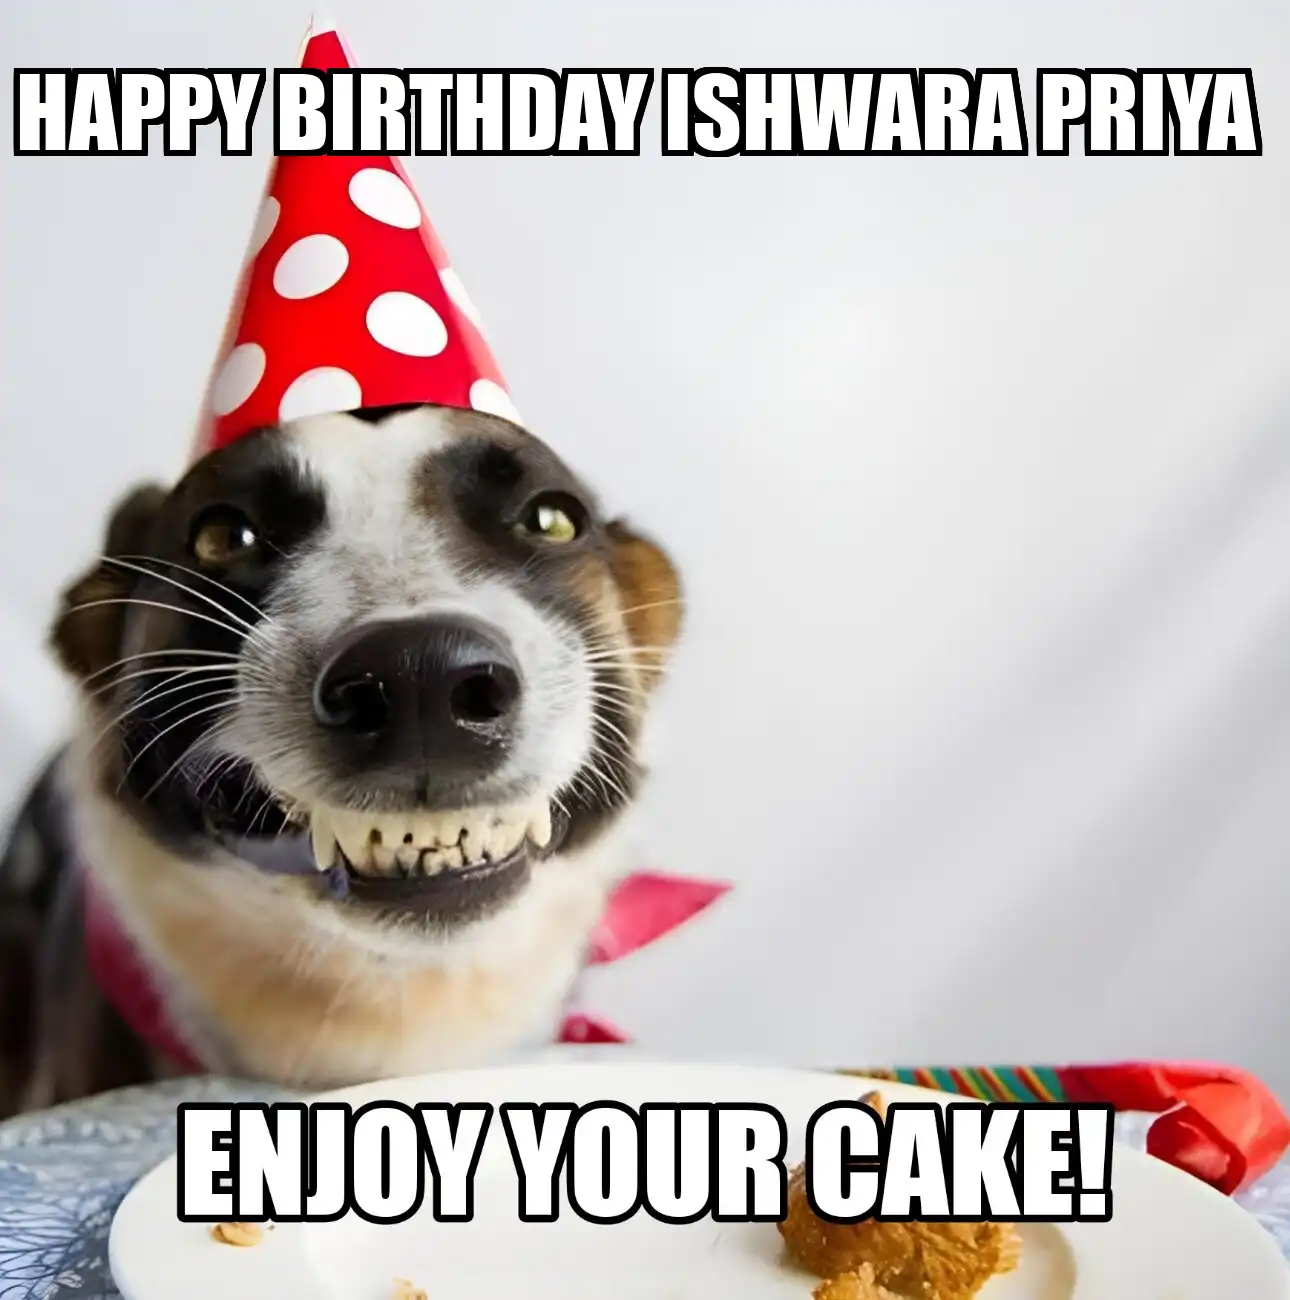 Happy Birthday Ishwara Priya Enjoy Your Cake Dog Meme